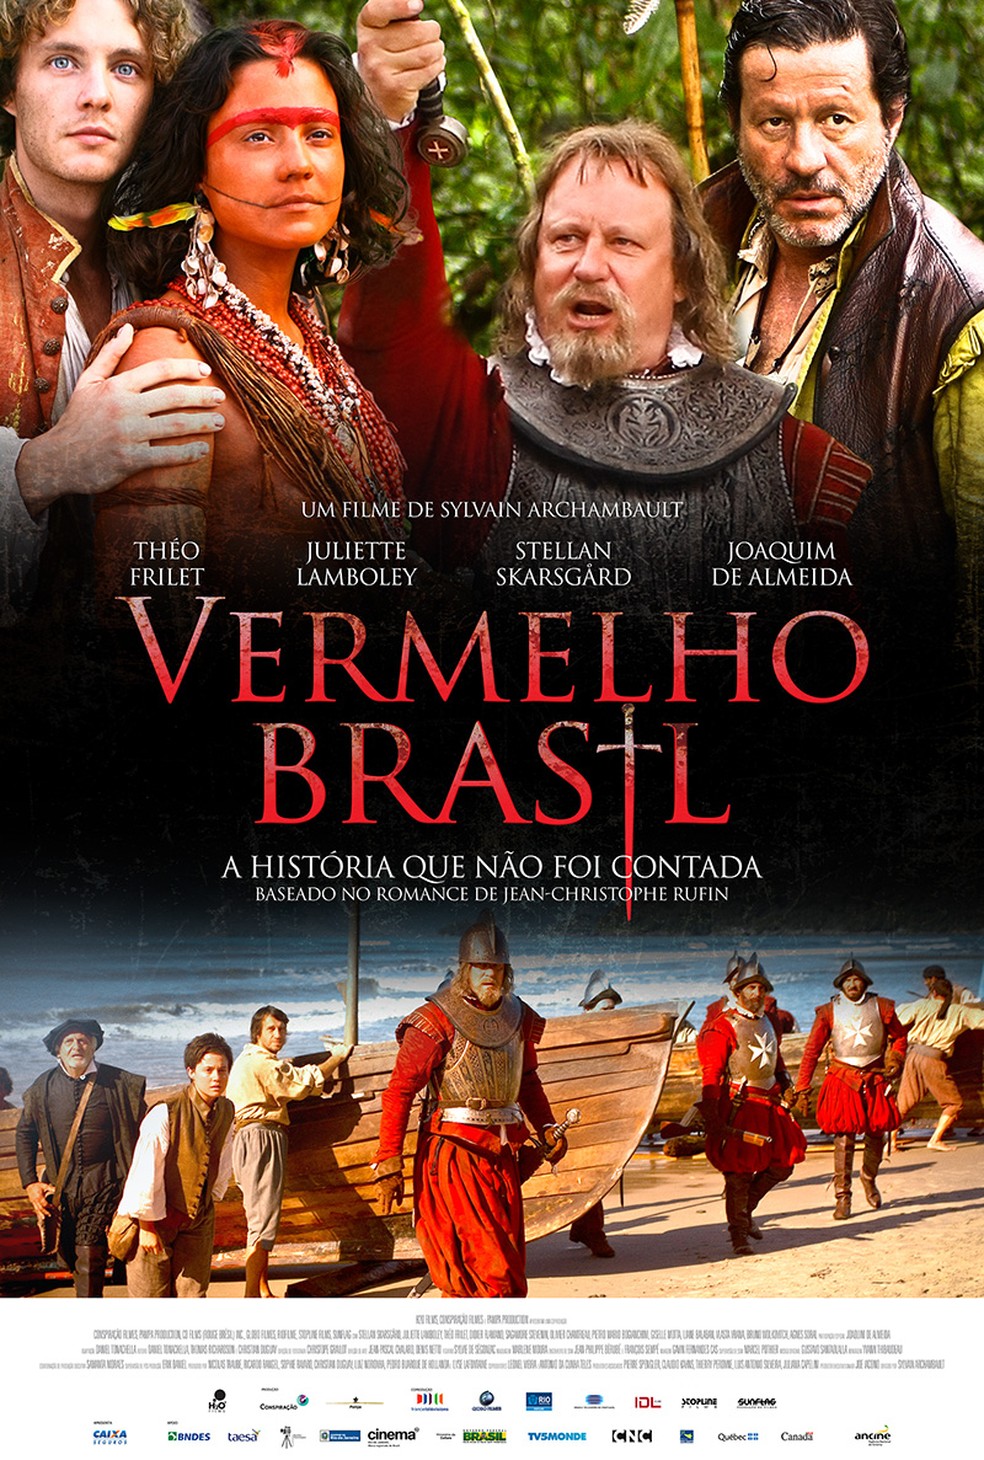 Vermelho Brasil | Drama | globofilmes